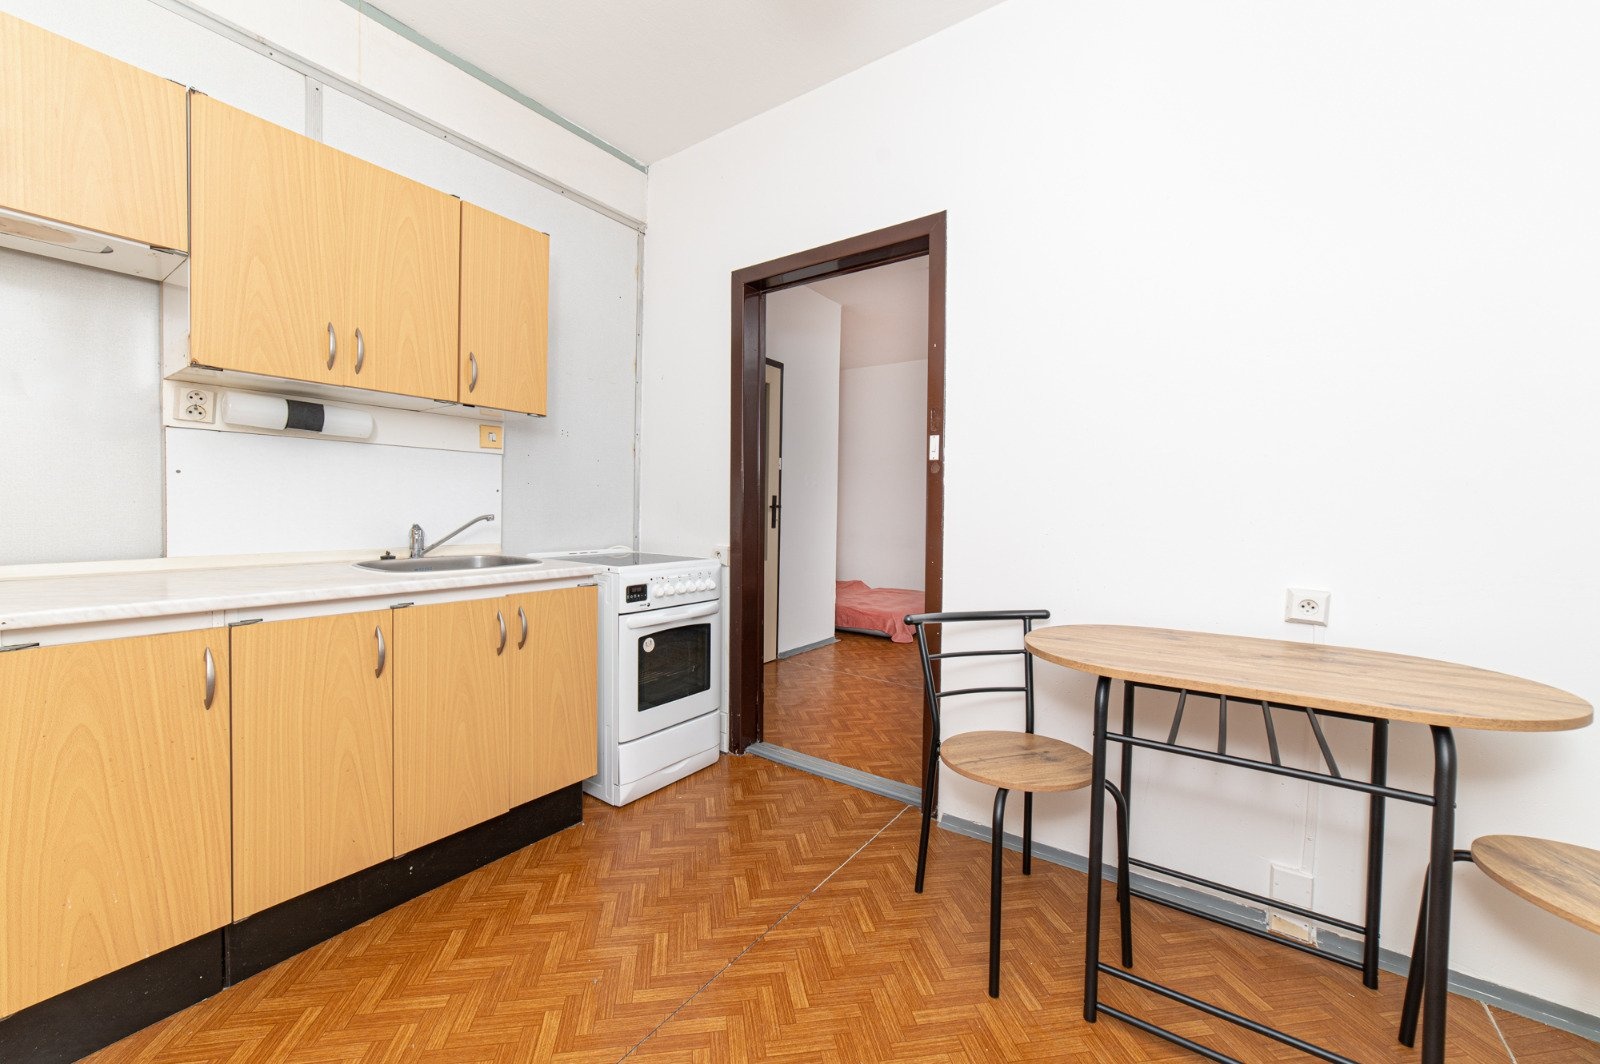 Družstevní byt 1+1 v původním stavu, 31 m² - Ostrava - Dubina